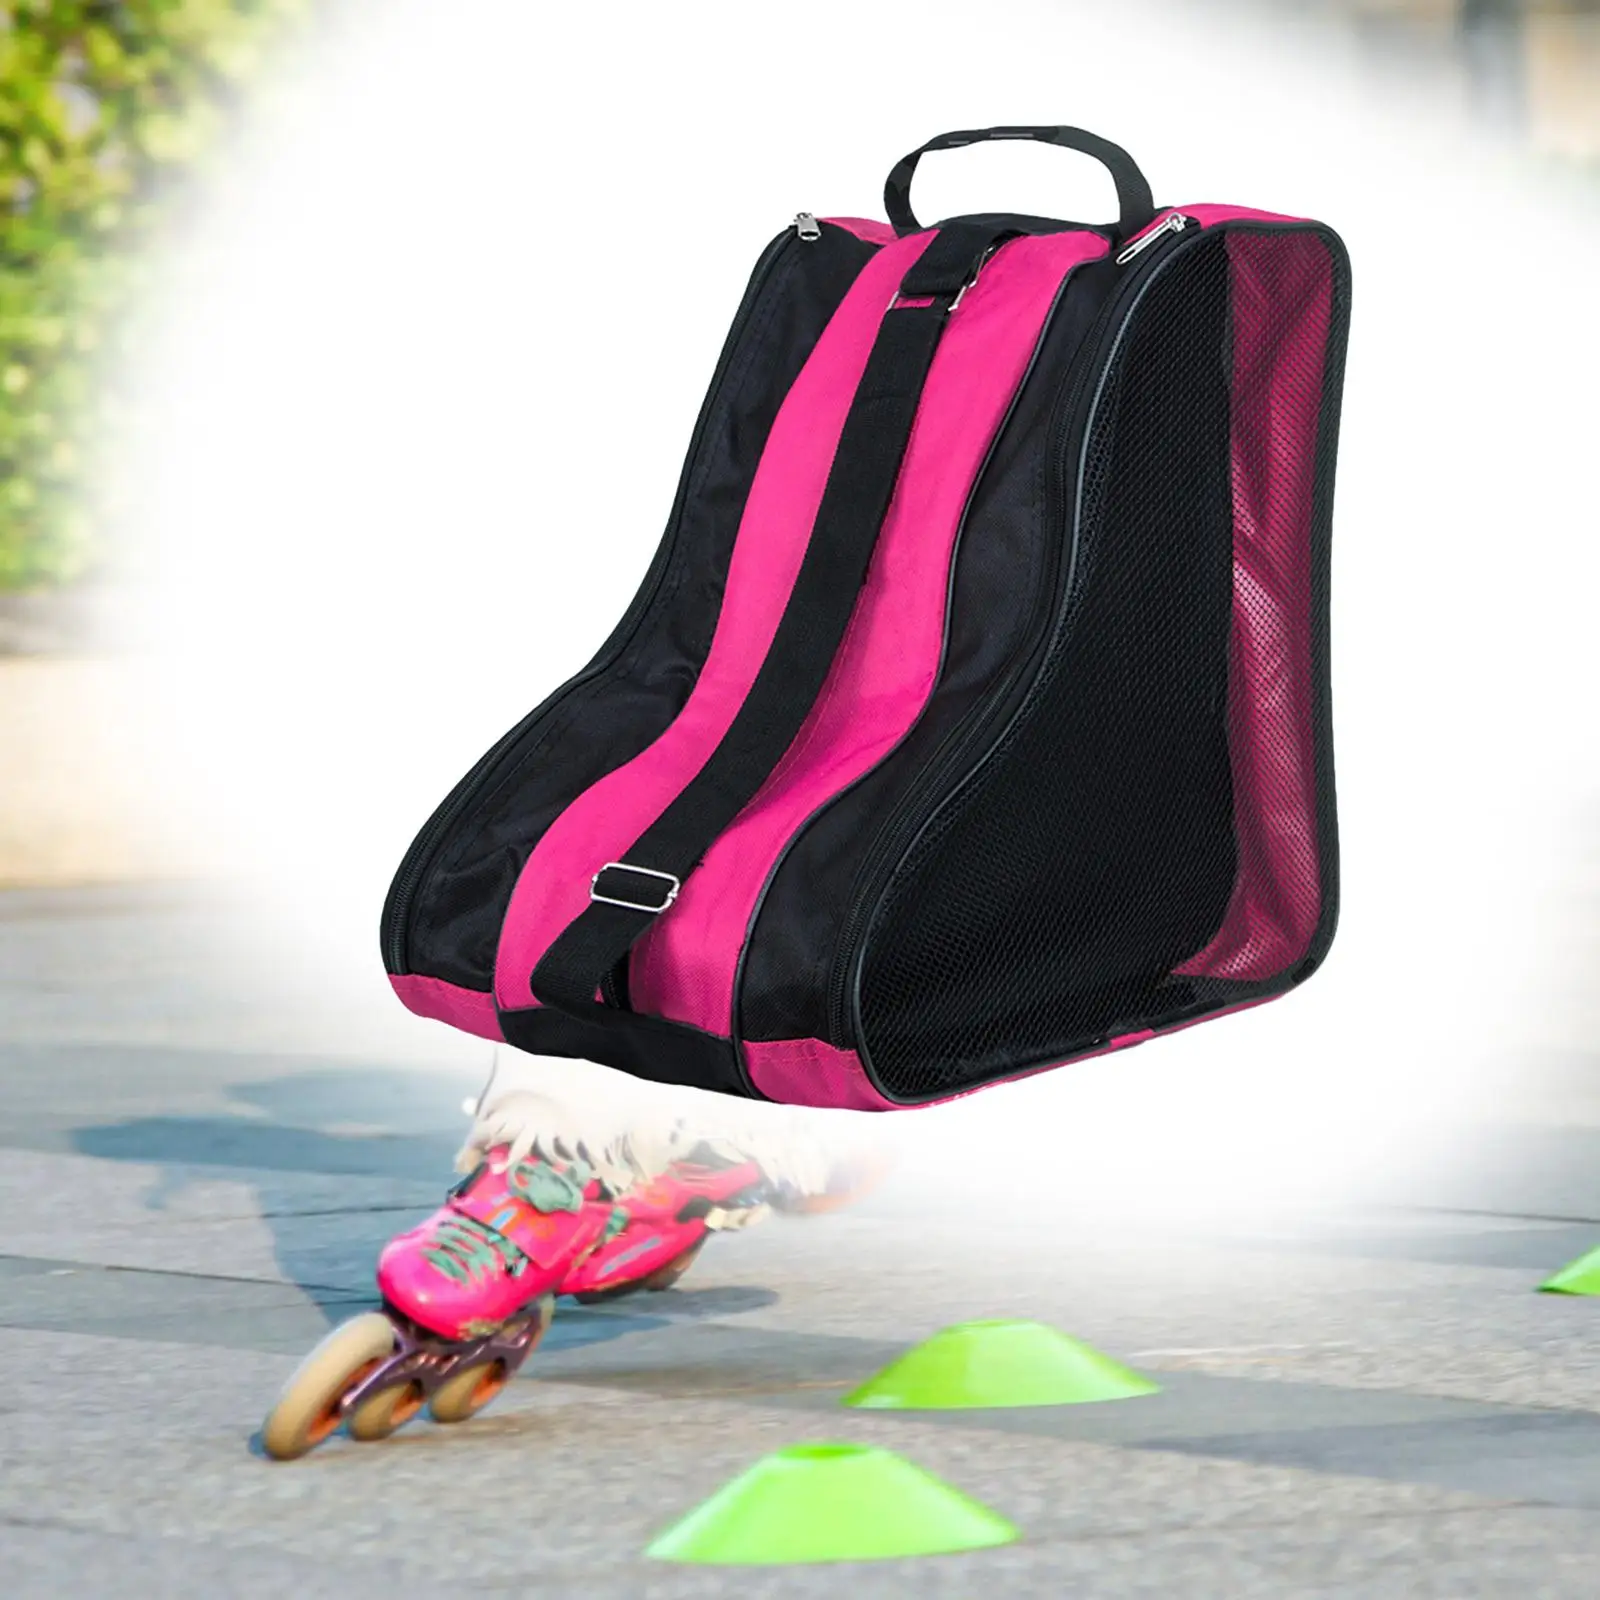 Roller Skate Bag Skate Accessories with Adjustable Shoulder Strap Skating Shoes Storage Bag for Quad Skates Figure Skates